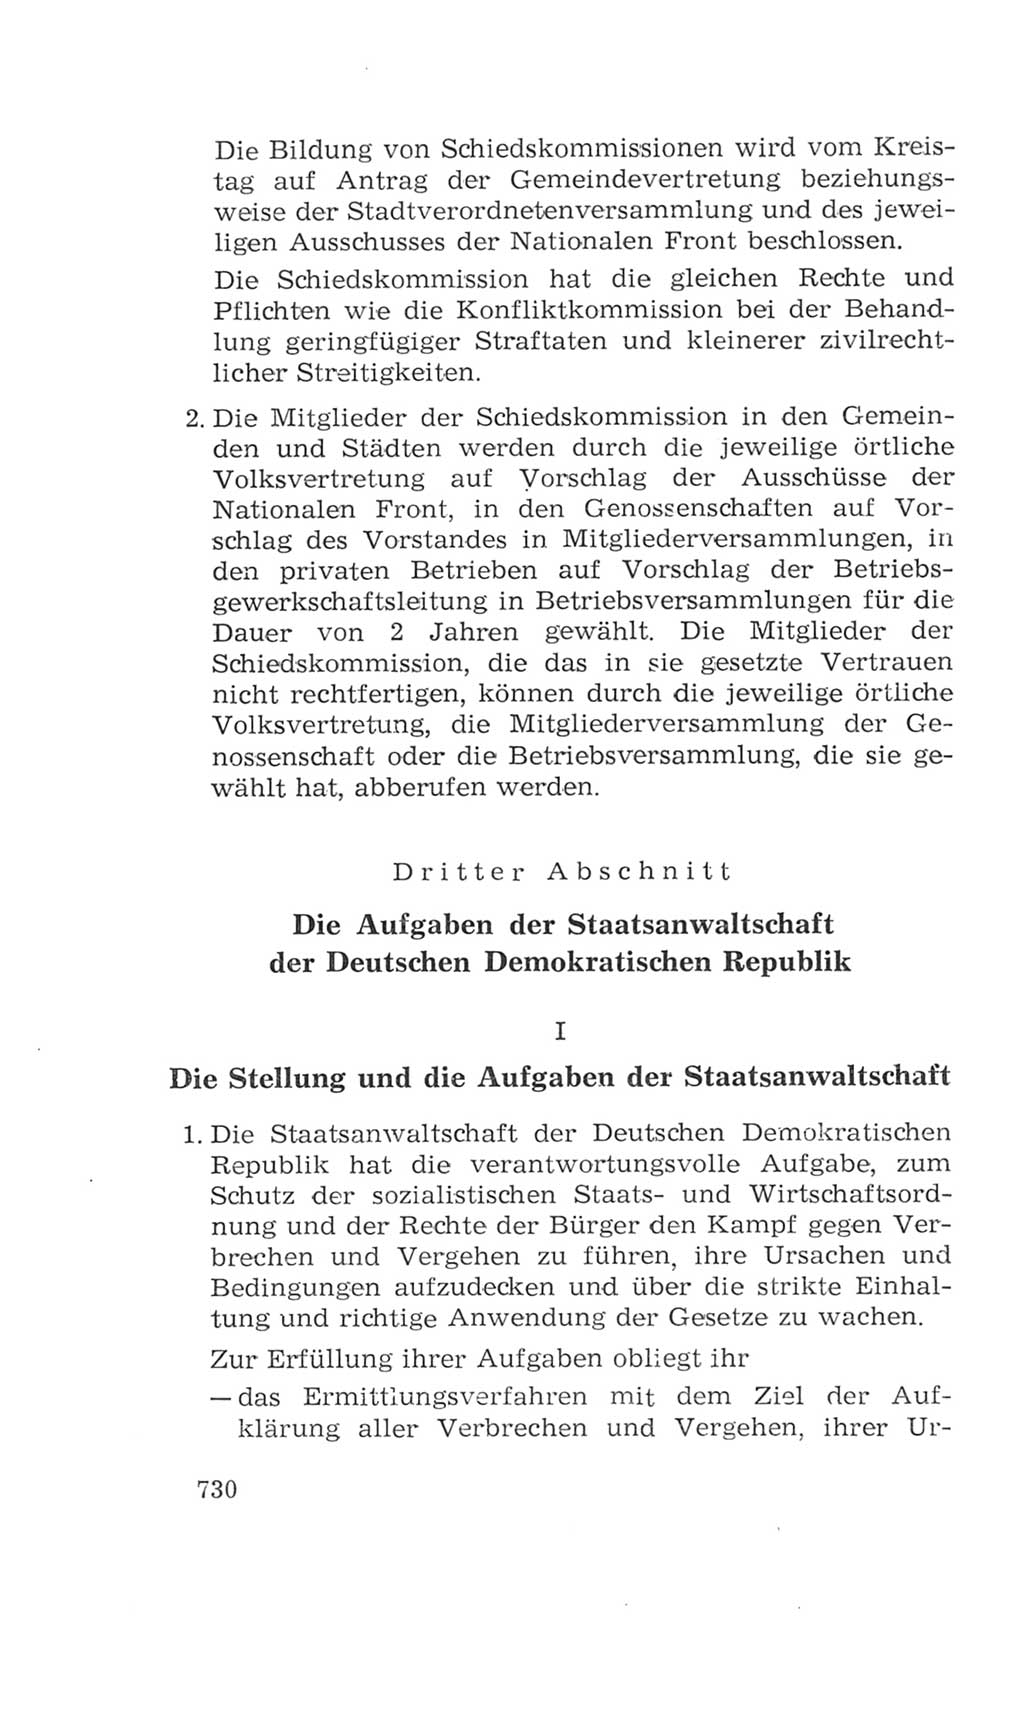 Volkskammer (VK) der Deutschen Demokratischen Republik (DDR), 4. Wahlperiode 1963-1967, Seite 730 (VK. DDR 4. WP. 1963-1967, S. 730)